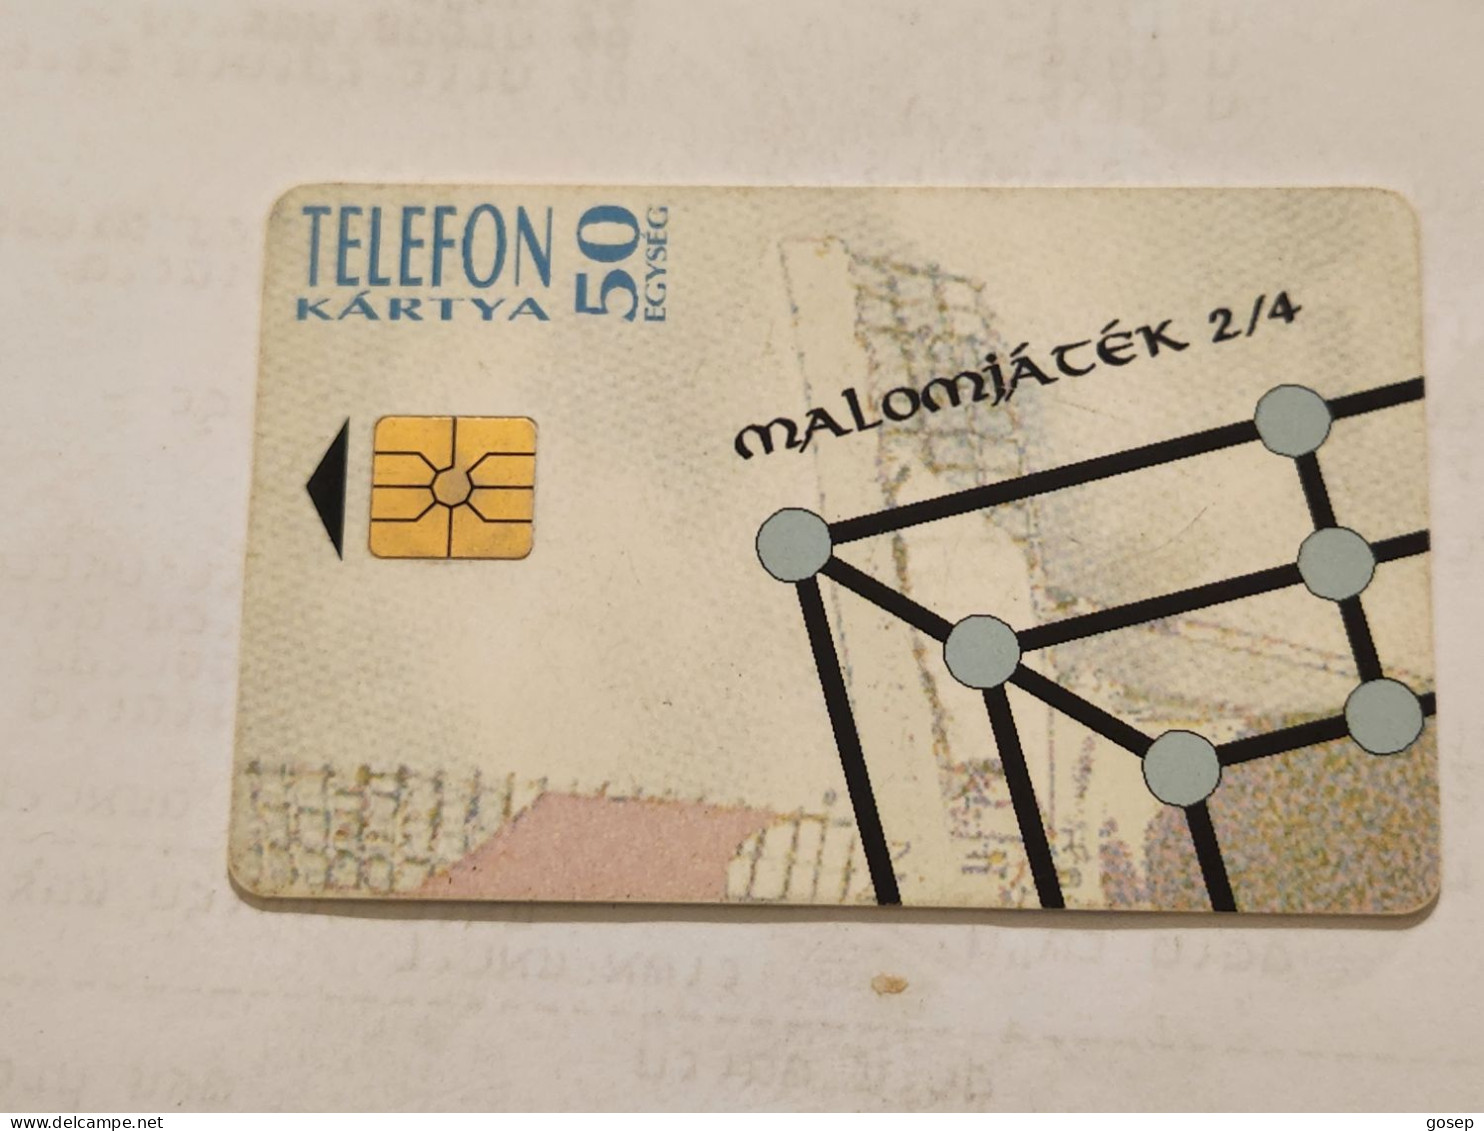 HUNGARY-(HU-P-1994-18Aa)-Malom -Tata (2/4)-(151)(50units)(1994)(tirage-250.000)-USED CARD+1card Prepiad Free - Ungheria